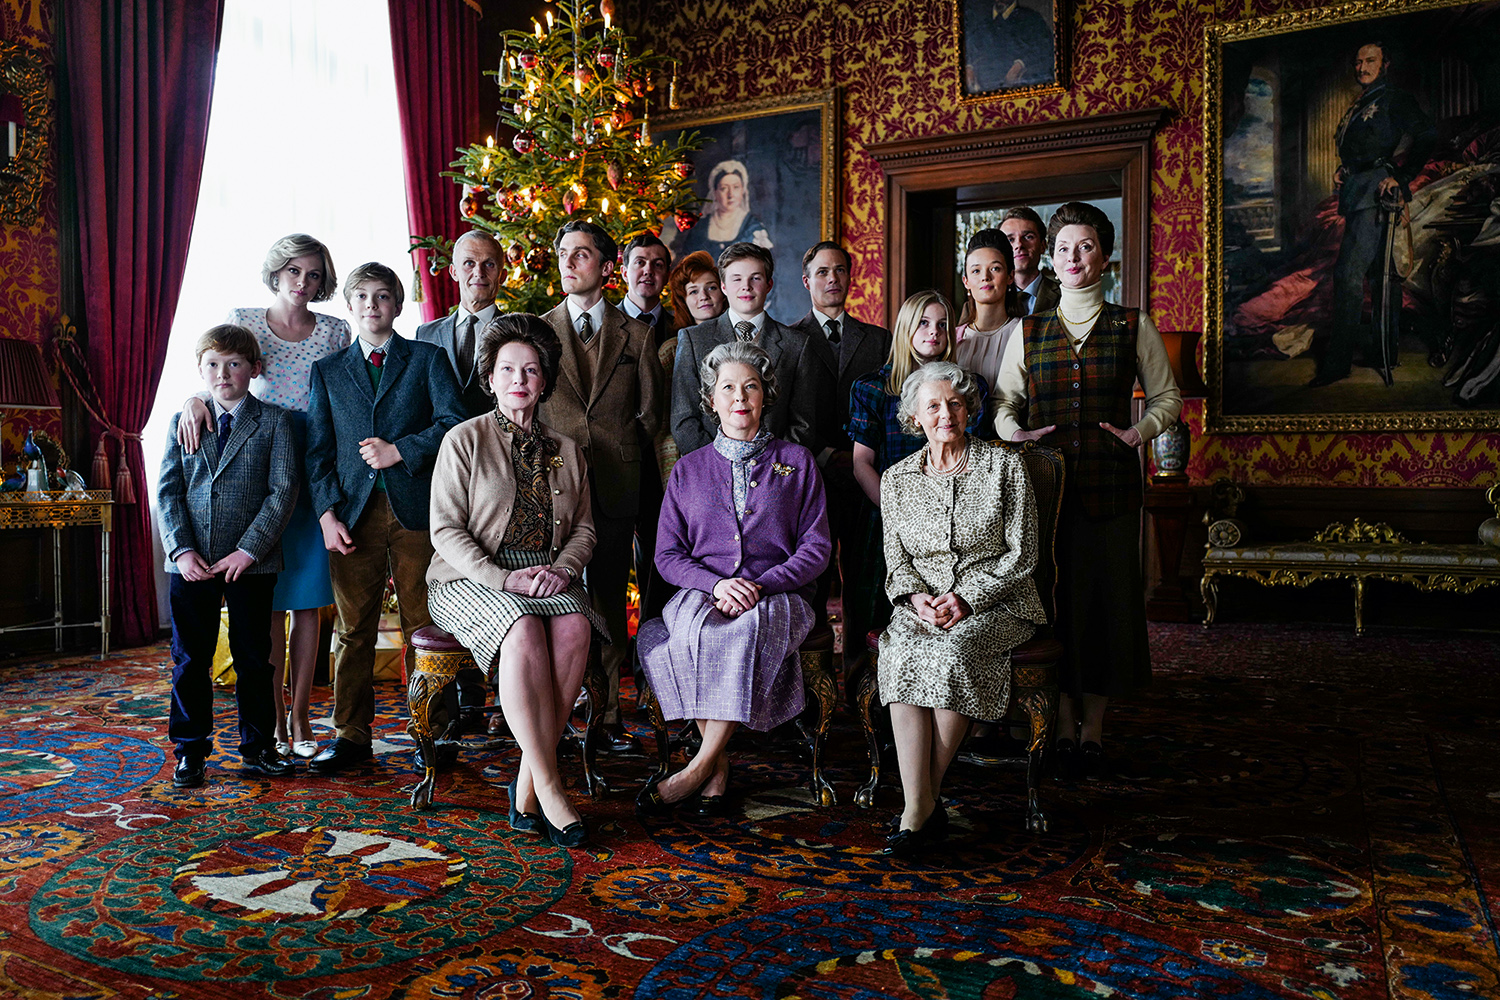 QUASE INVISÍVEL - Diana é relegada ao canto esquerdo da tradicional foto natalina de família: um retrato da hostilidade -